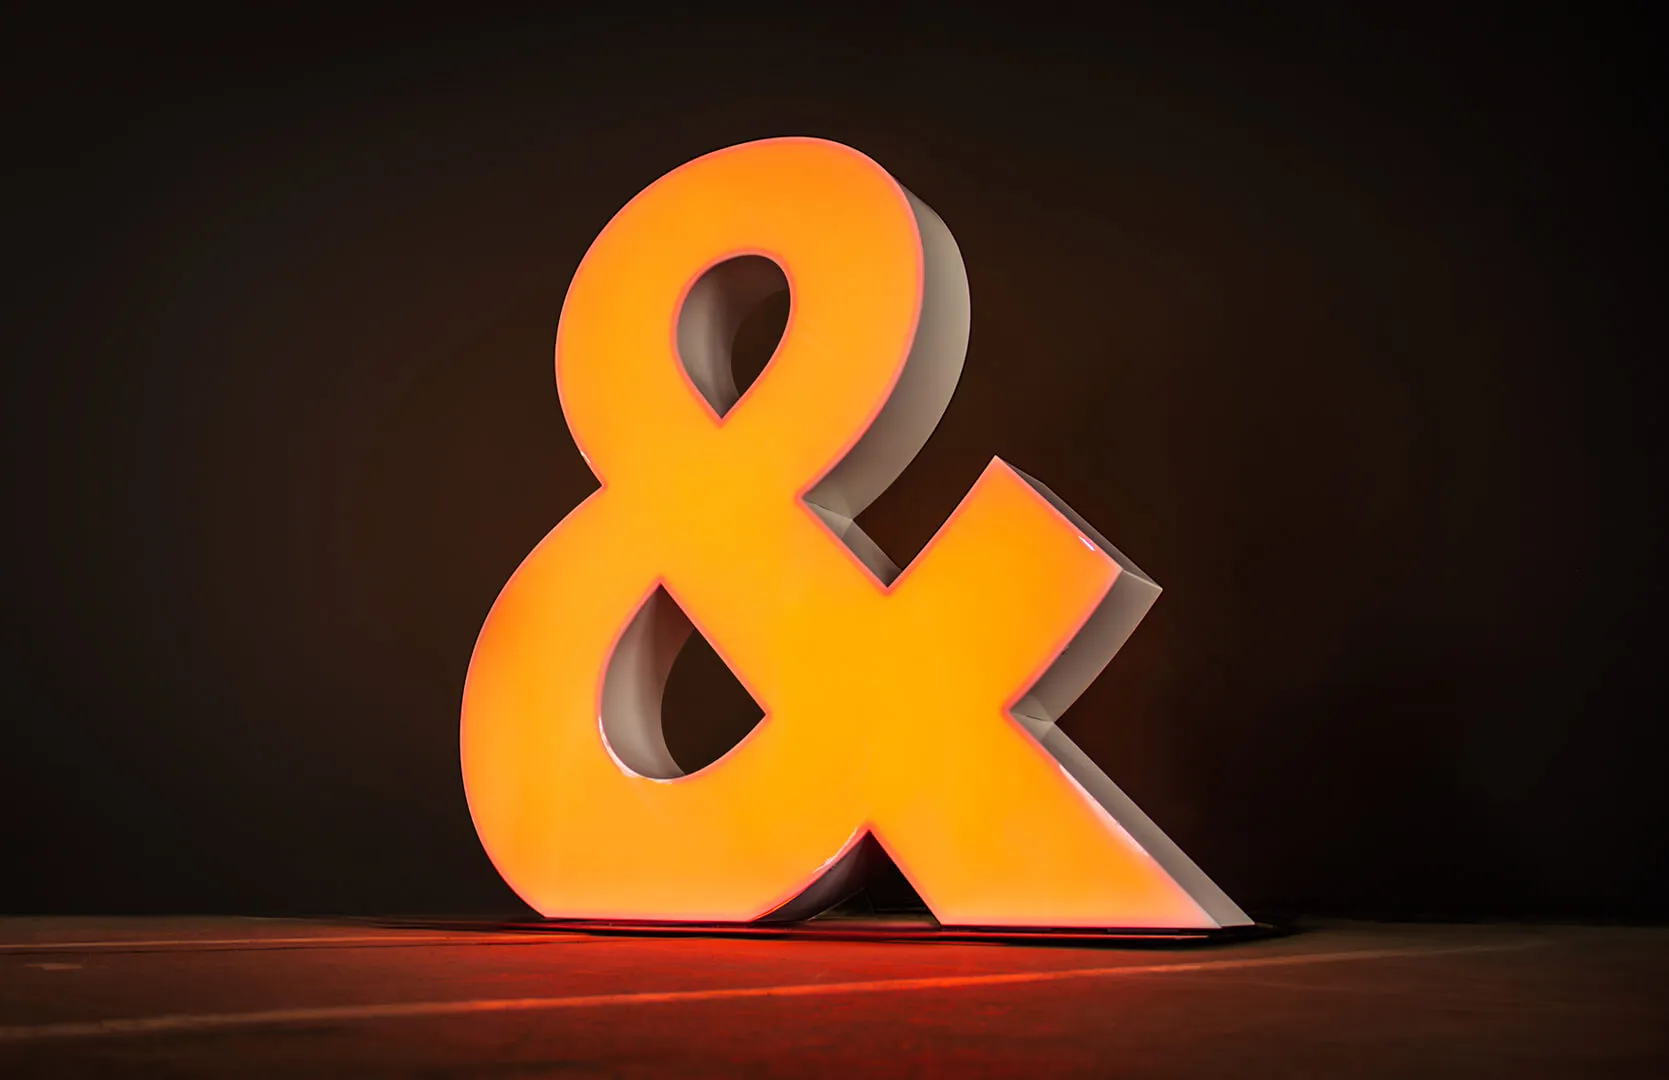 Litery wielkoformatowe - Gigantyczny symbol podświetlany w kolorze pomarańczowym